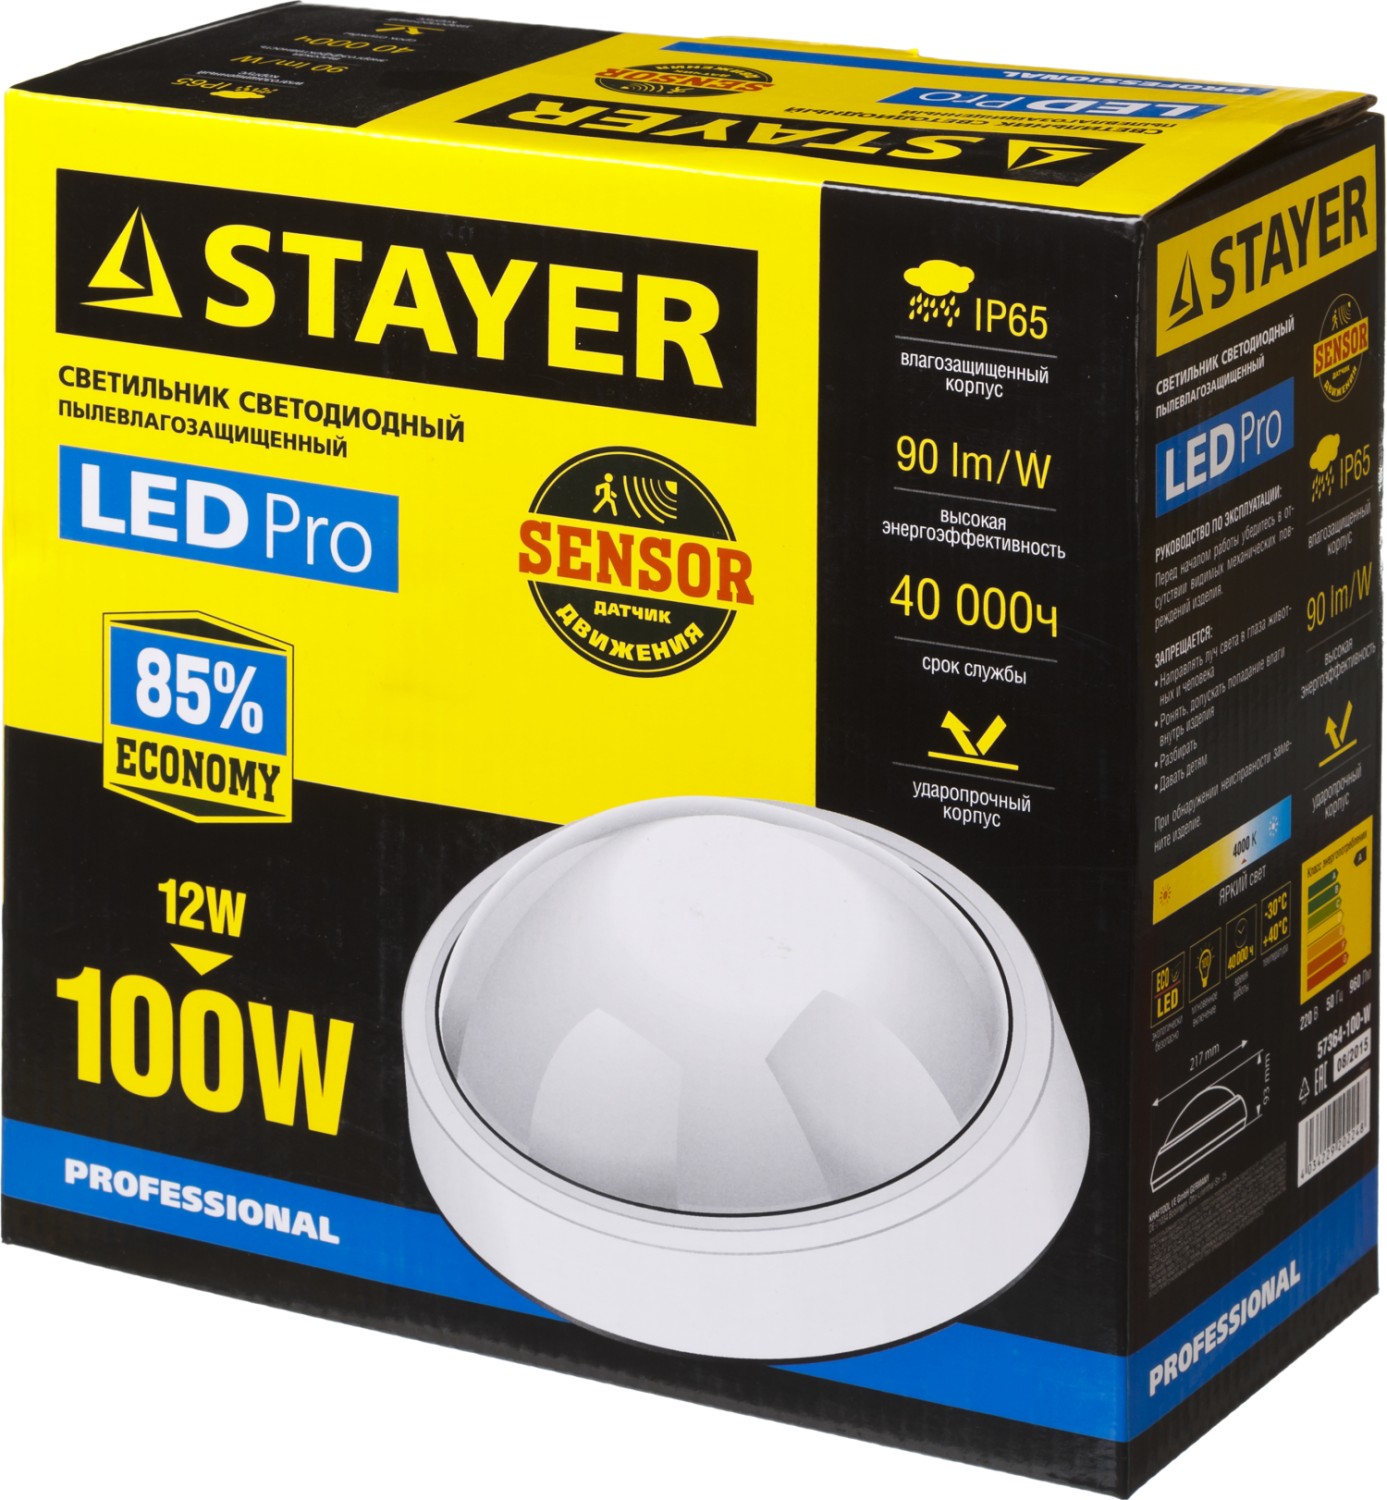 STAYER PROLight, 12(100 Вт), влагозащищенный светодиодный светильник (57364-100-W)